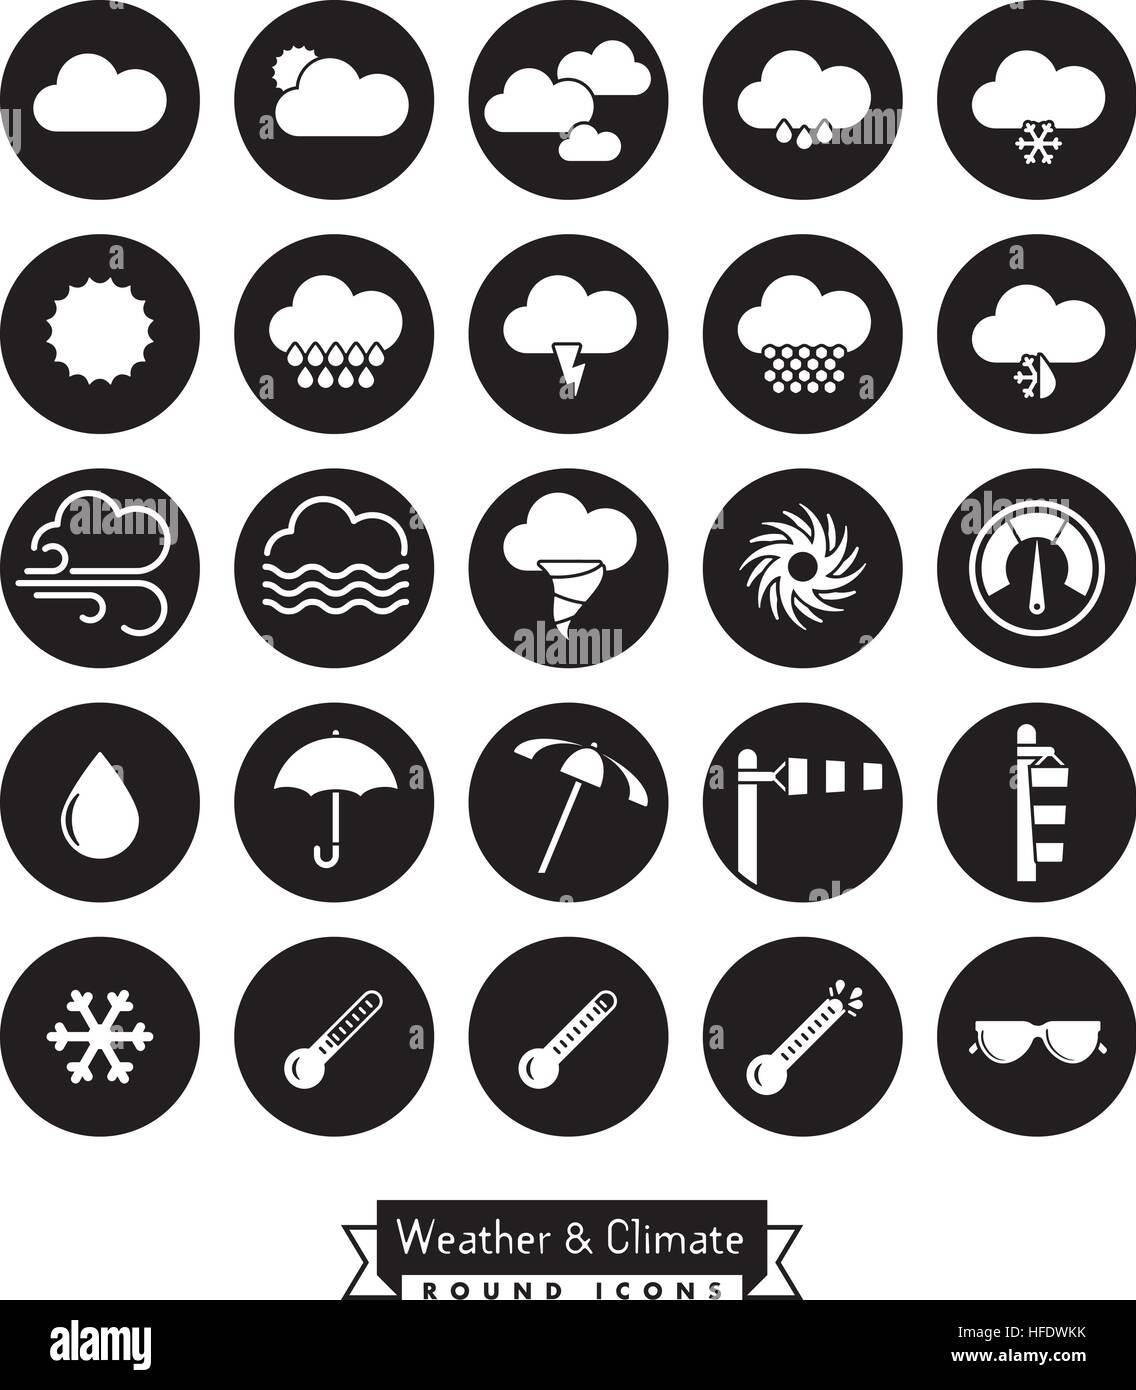 Sammlung von Wetter, Klima und Meteorologie im Zusammenhang mit runden schwarzen Vektor-icons Stock Vektor